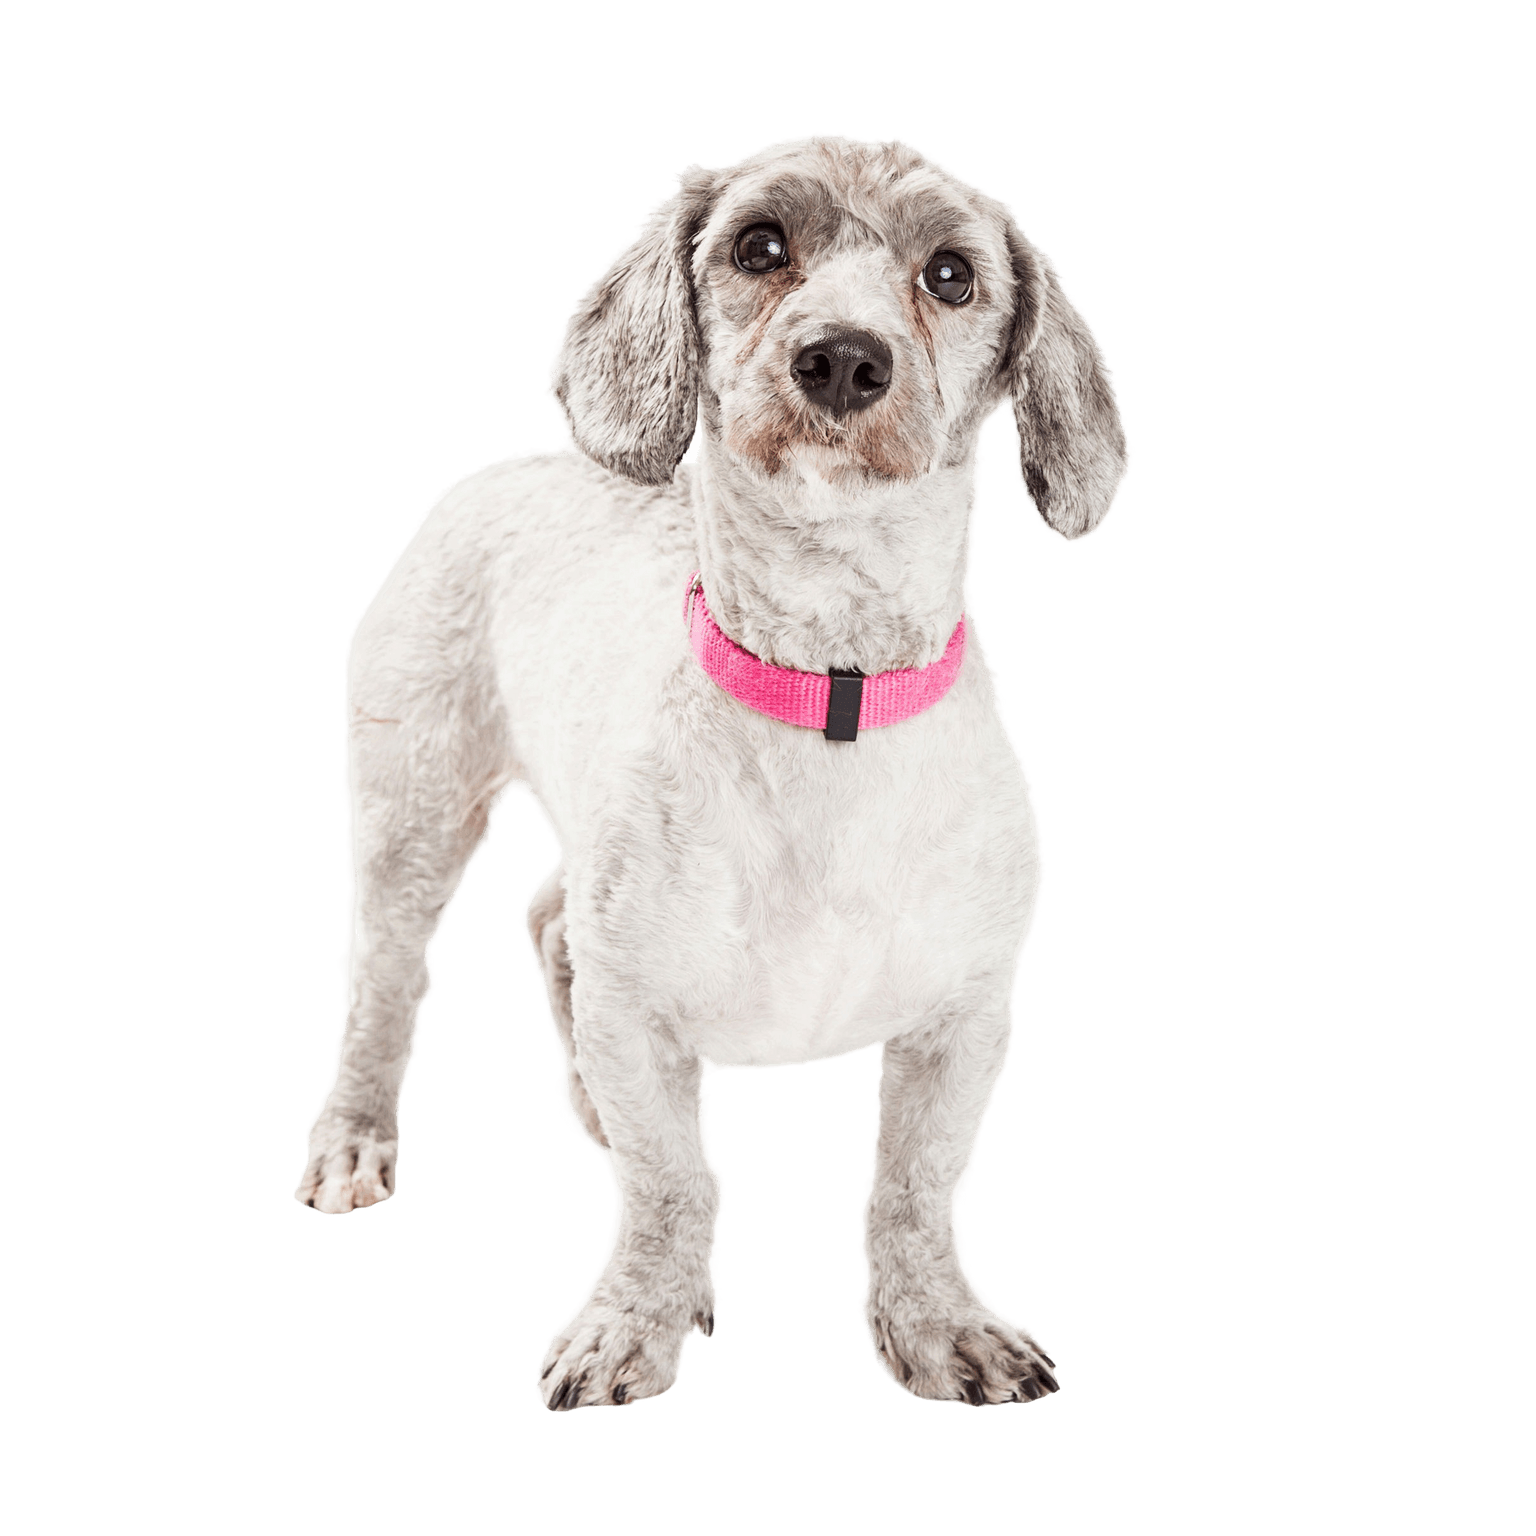 Le chien Doxiepoo est un croisement entre un caniche et un teckel ou un teckel.